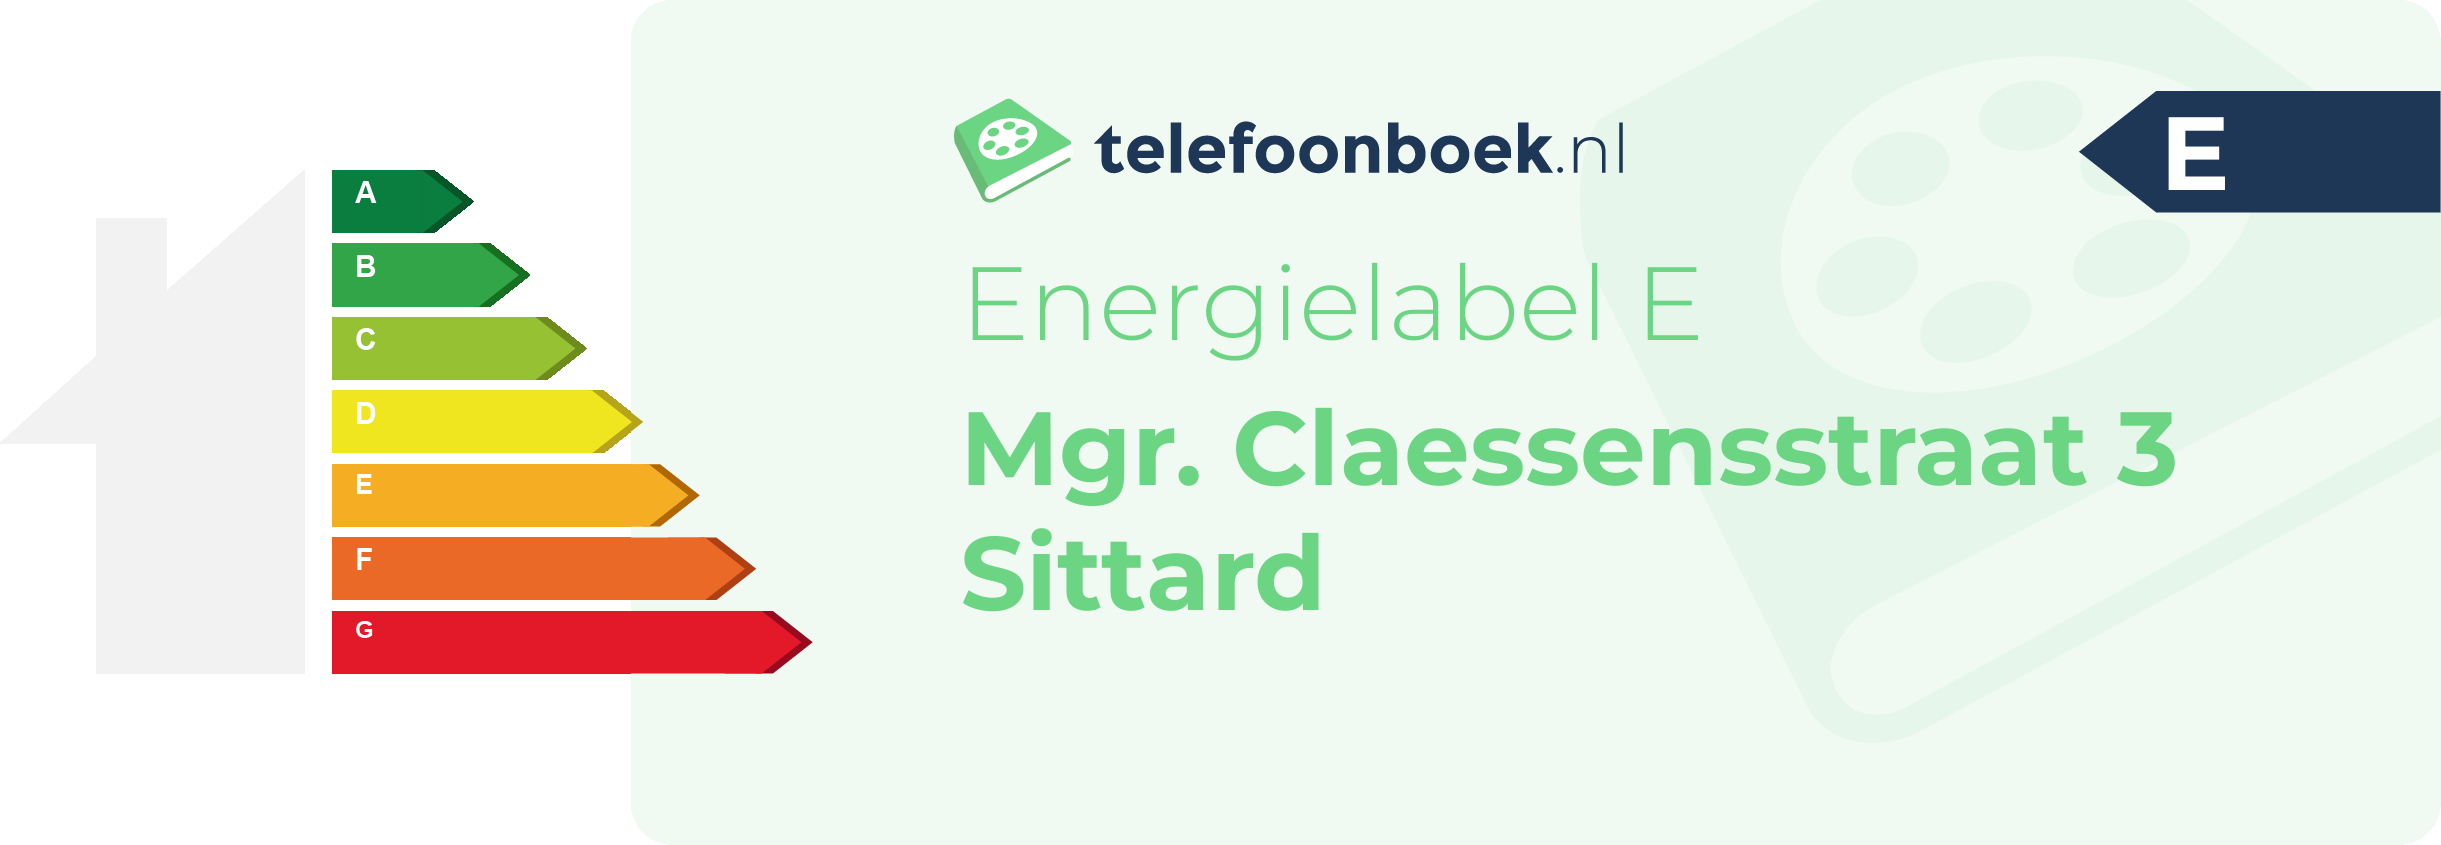 Energielabel Mgr. Claessensstraat 3 Sittard